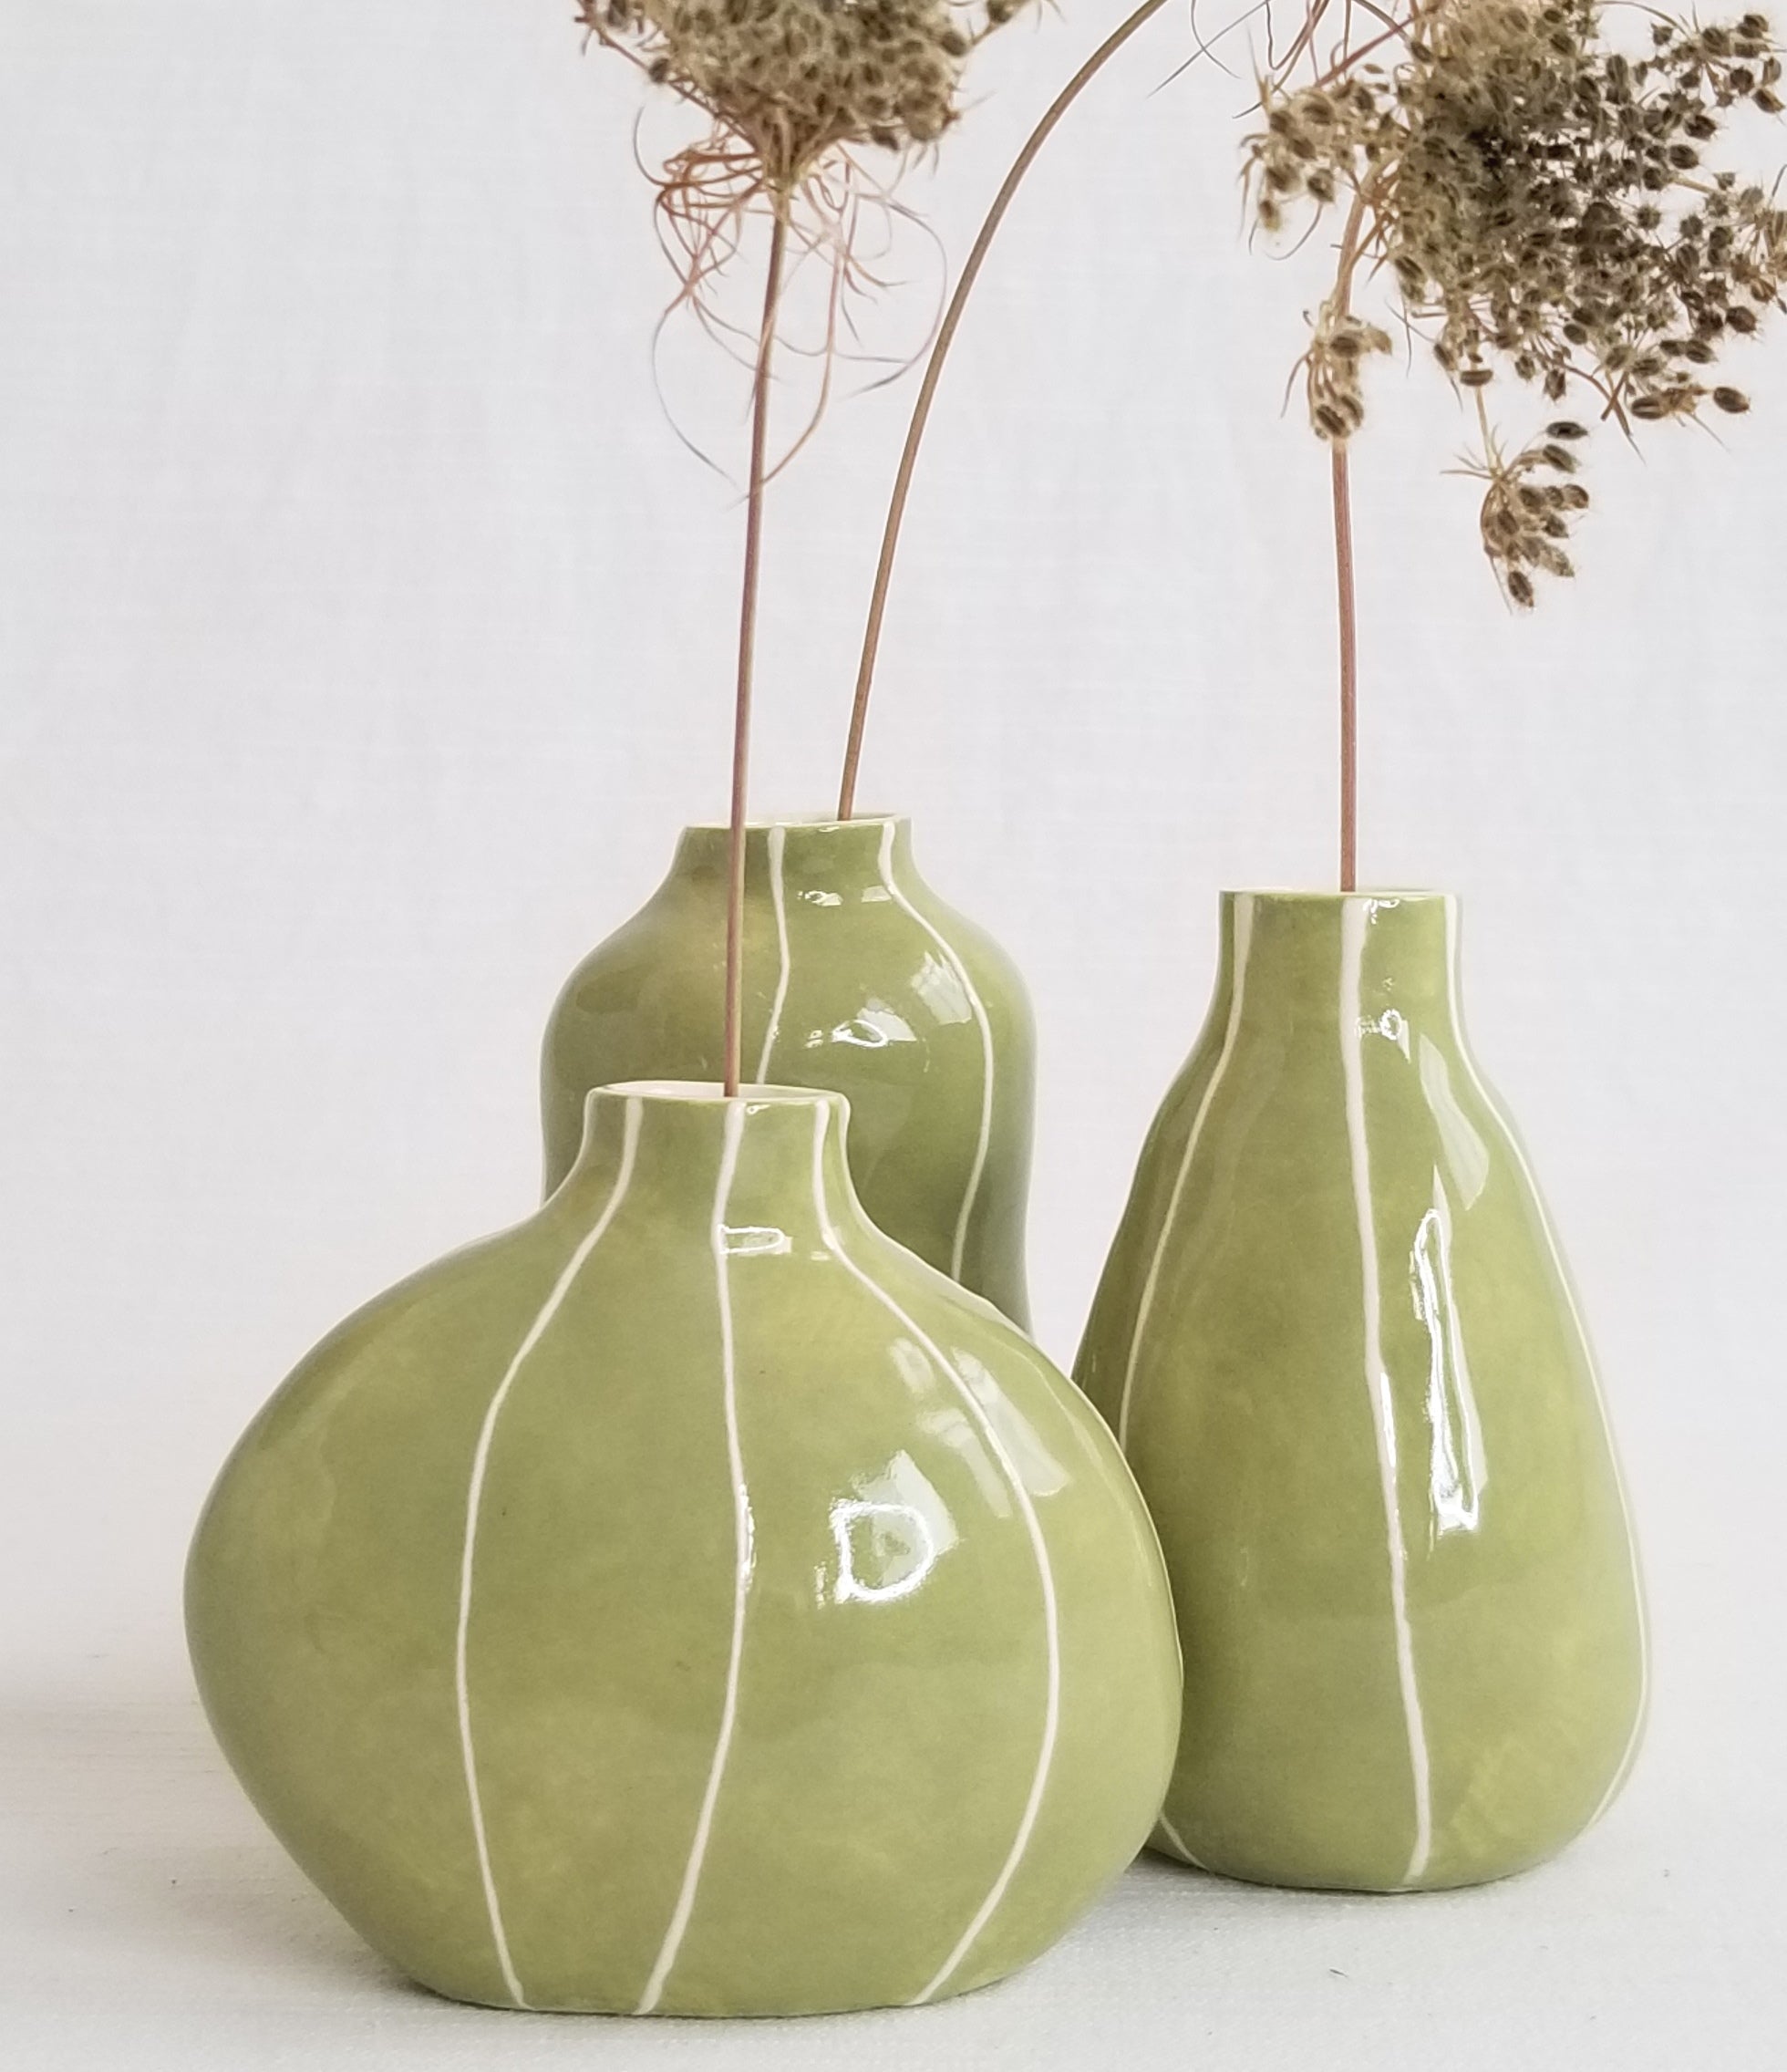 Chash 2 Vase by Zieta